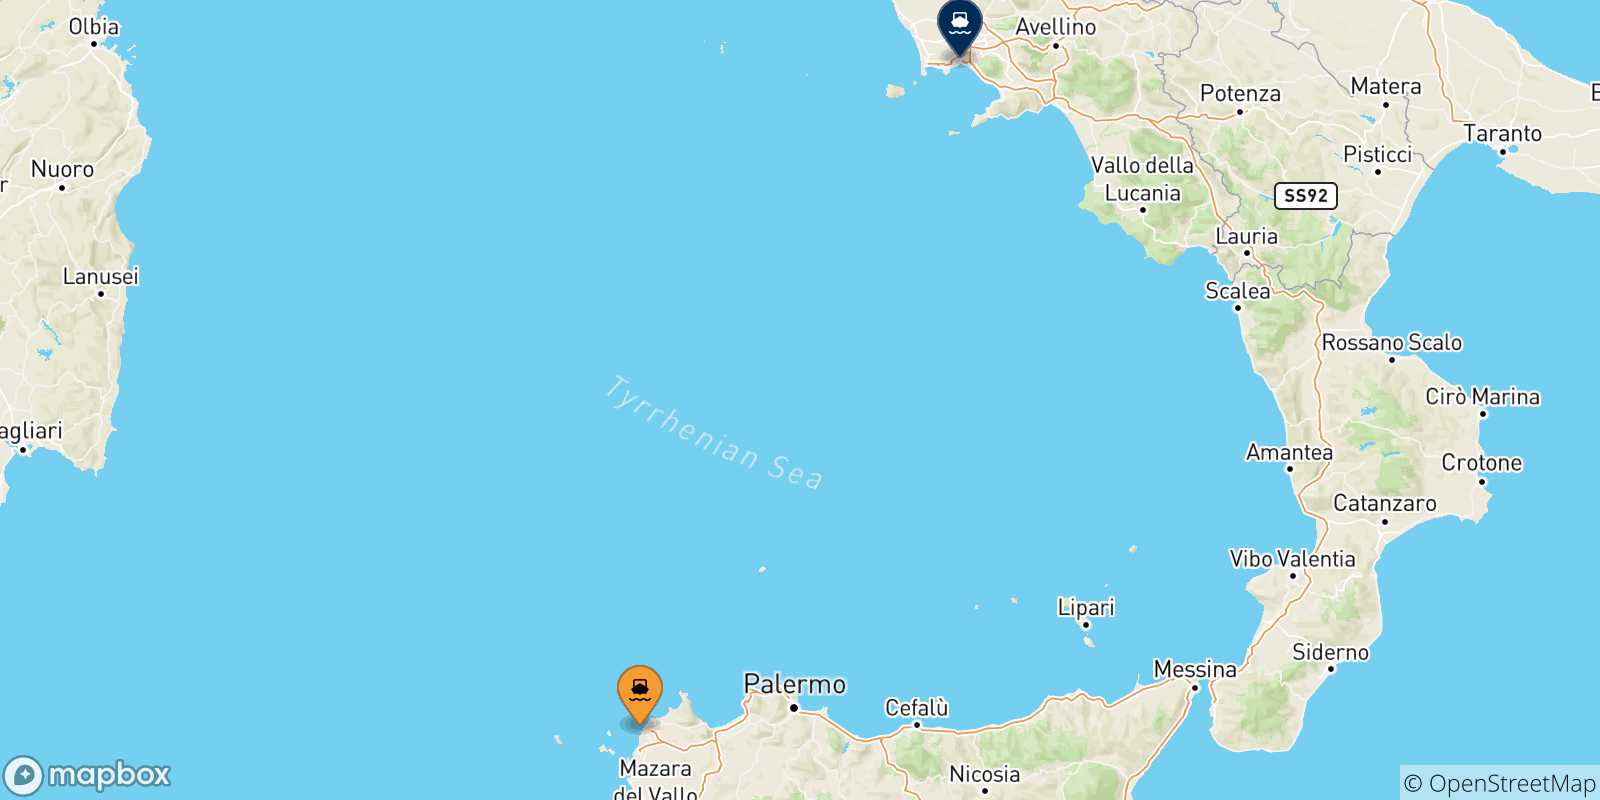 Mappa delle possibili rotte tra la Sicilia e Napoli Beverello